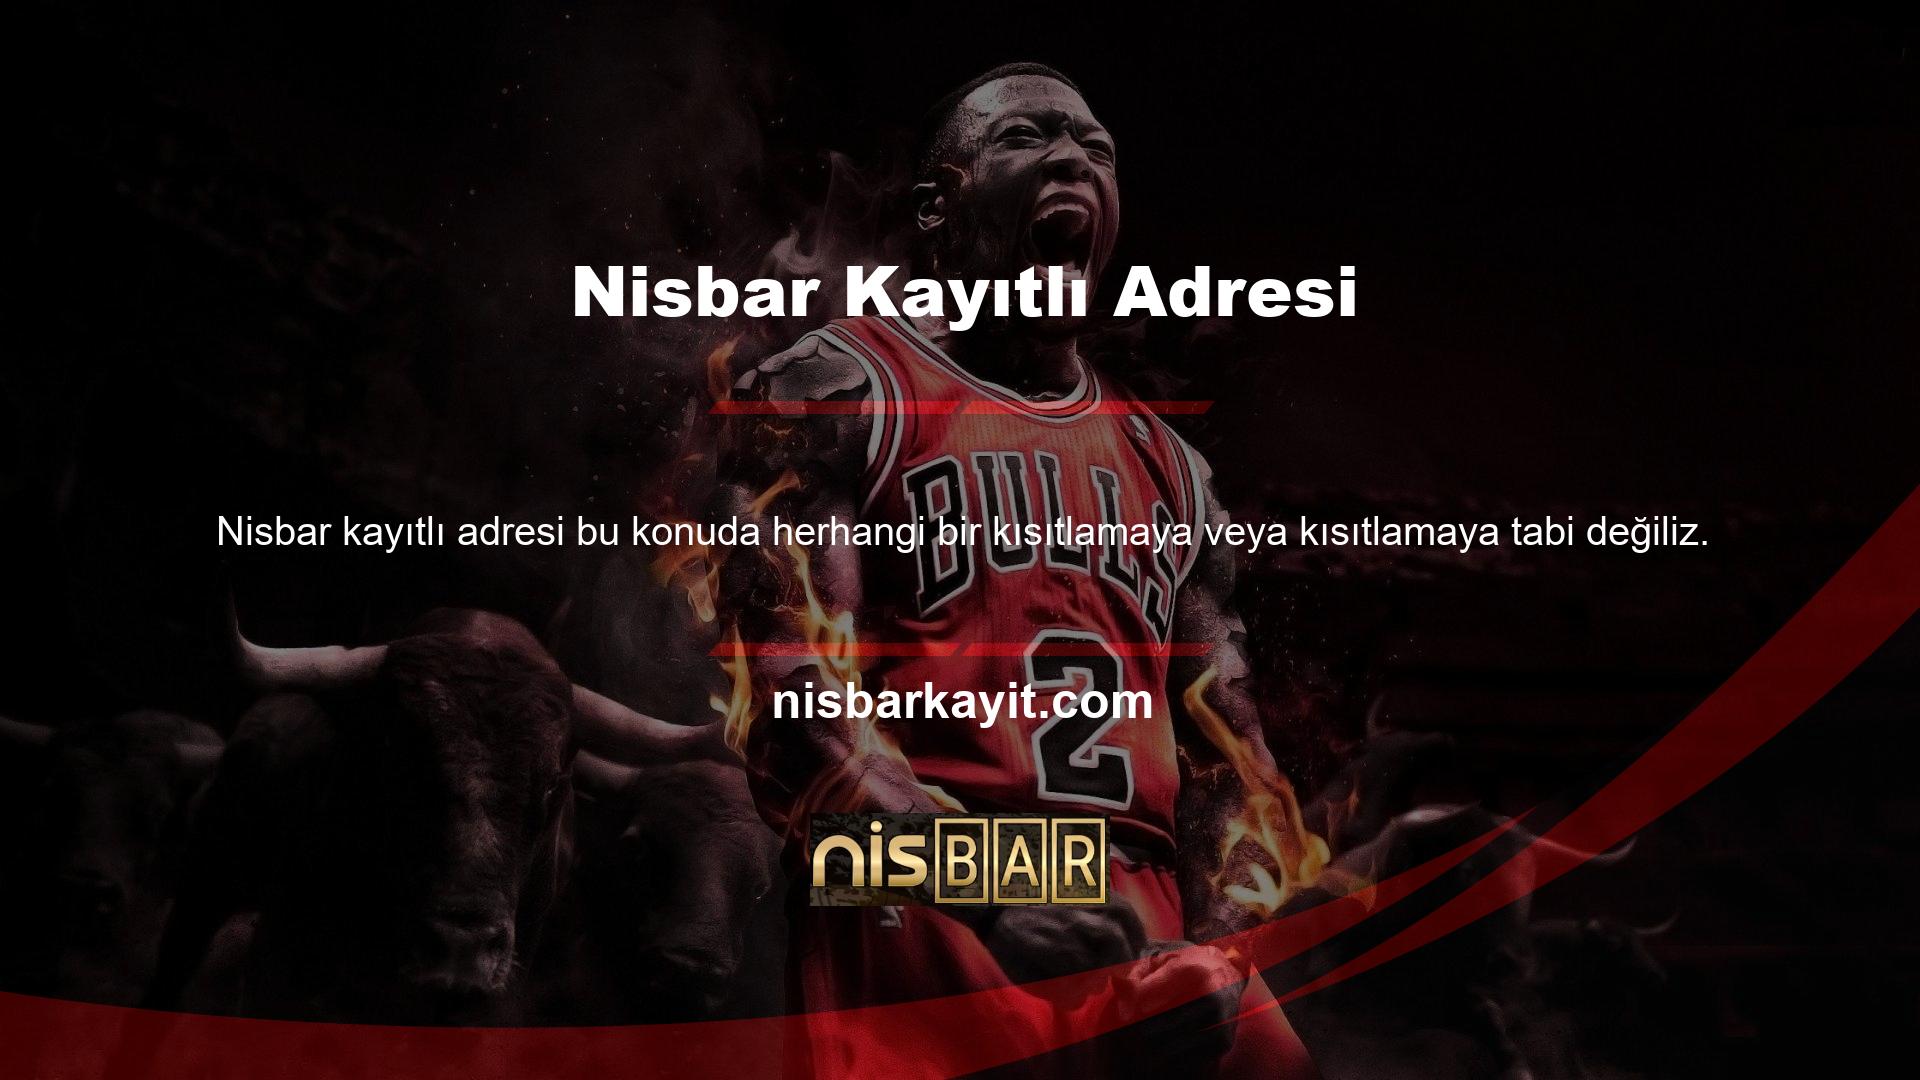 Nisbar Home, kullanıcılara benzersiz bir rulet oynama fırsatı sunan çekici bir sitedir